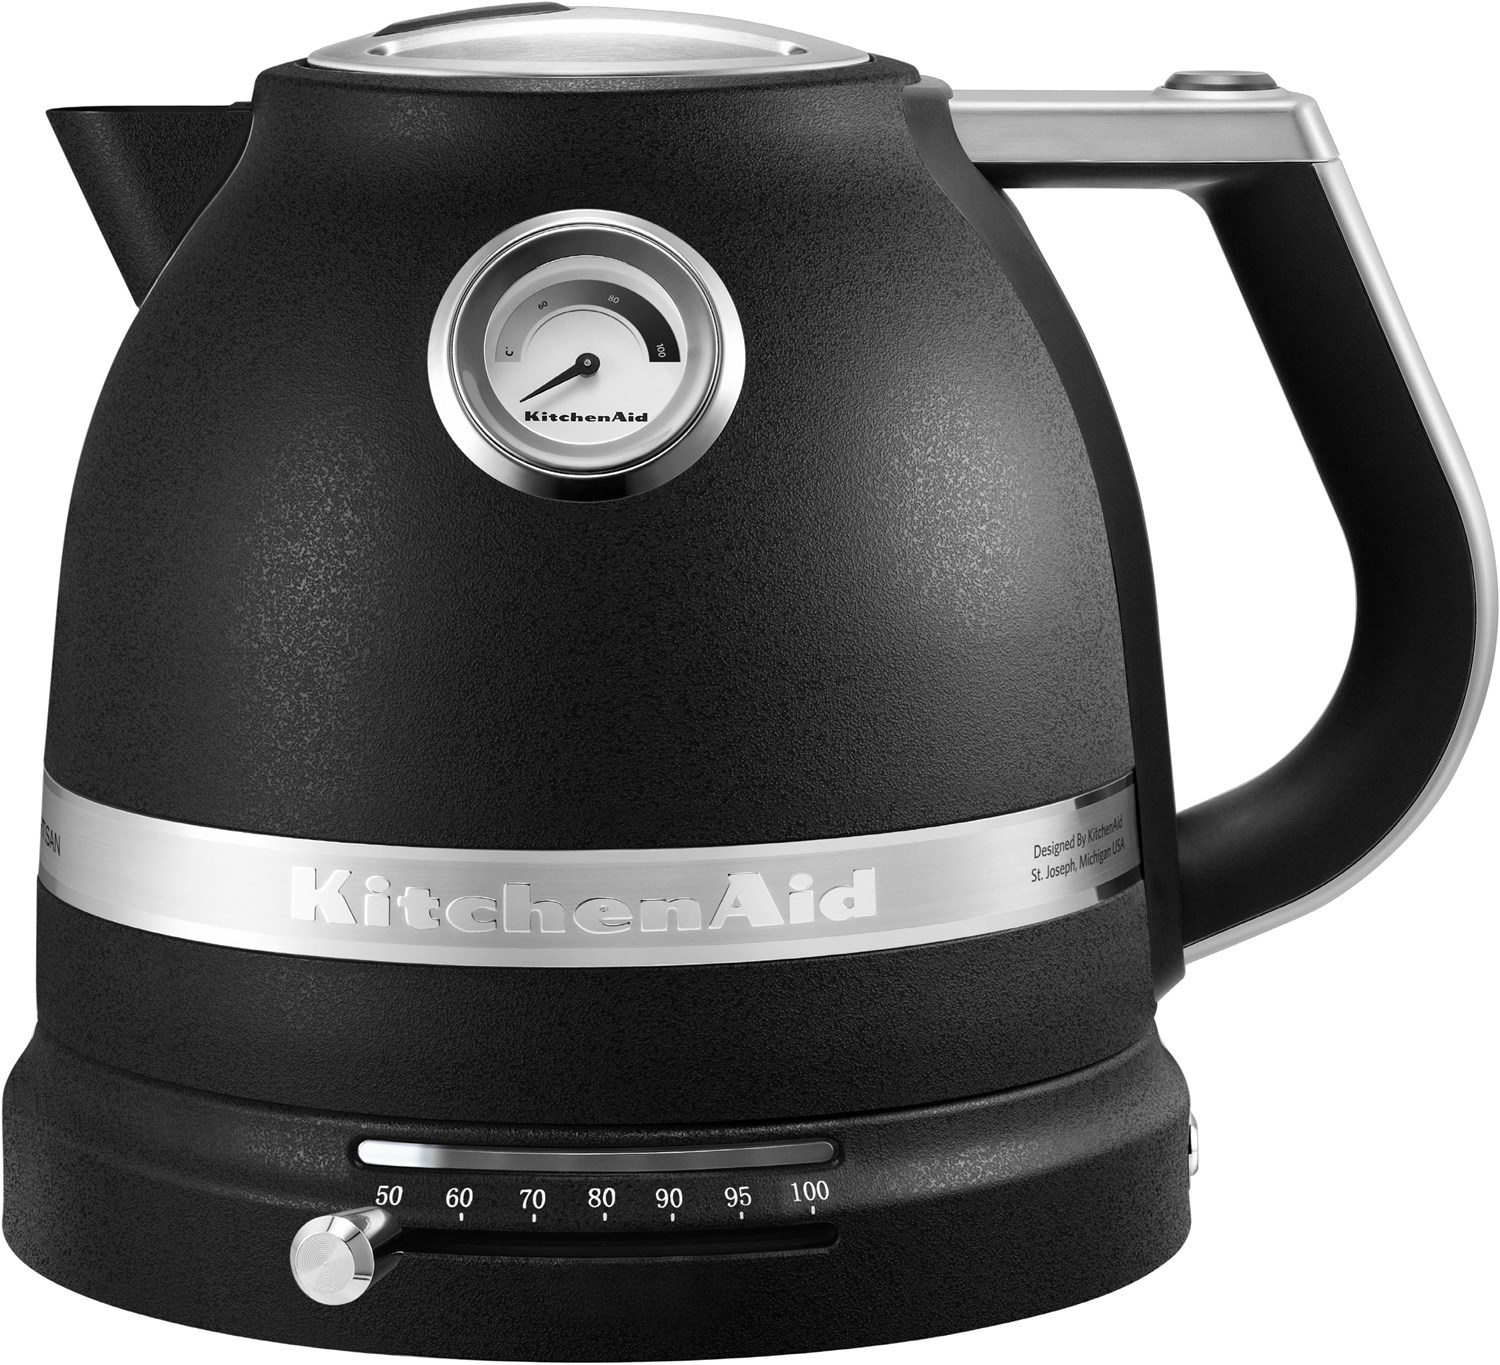 KitchenAid 5KEK1522EBK Artisan Wasserkocher cast iron schwarz